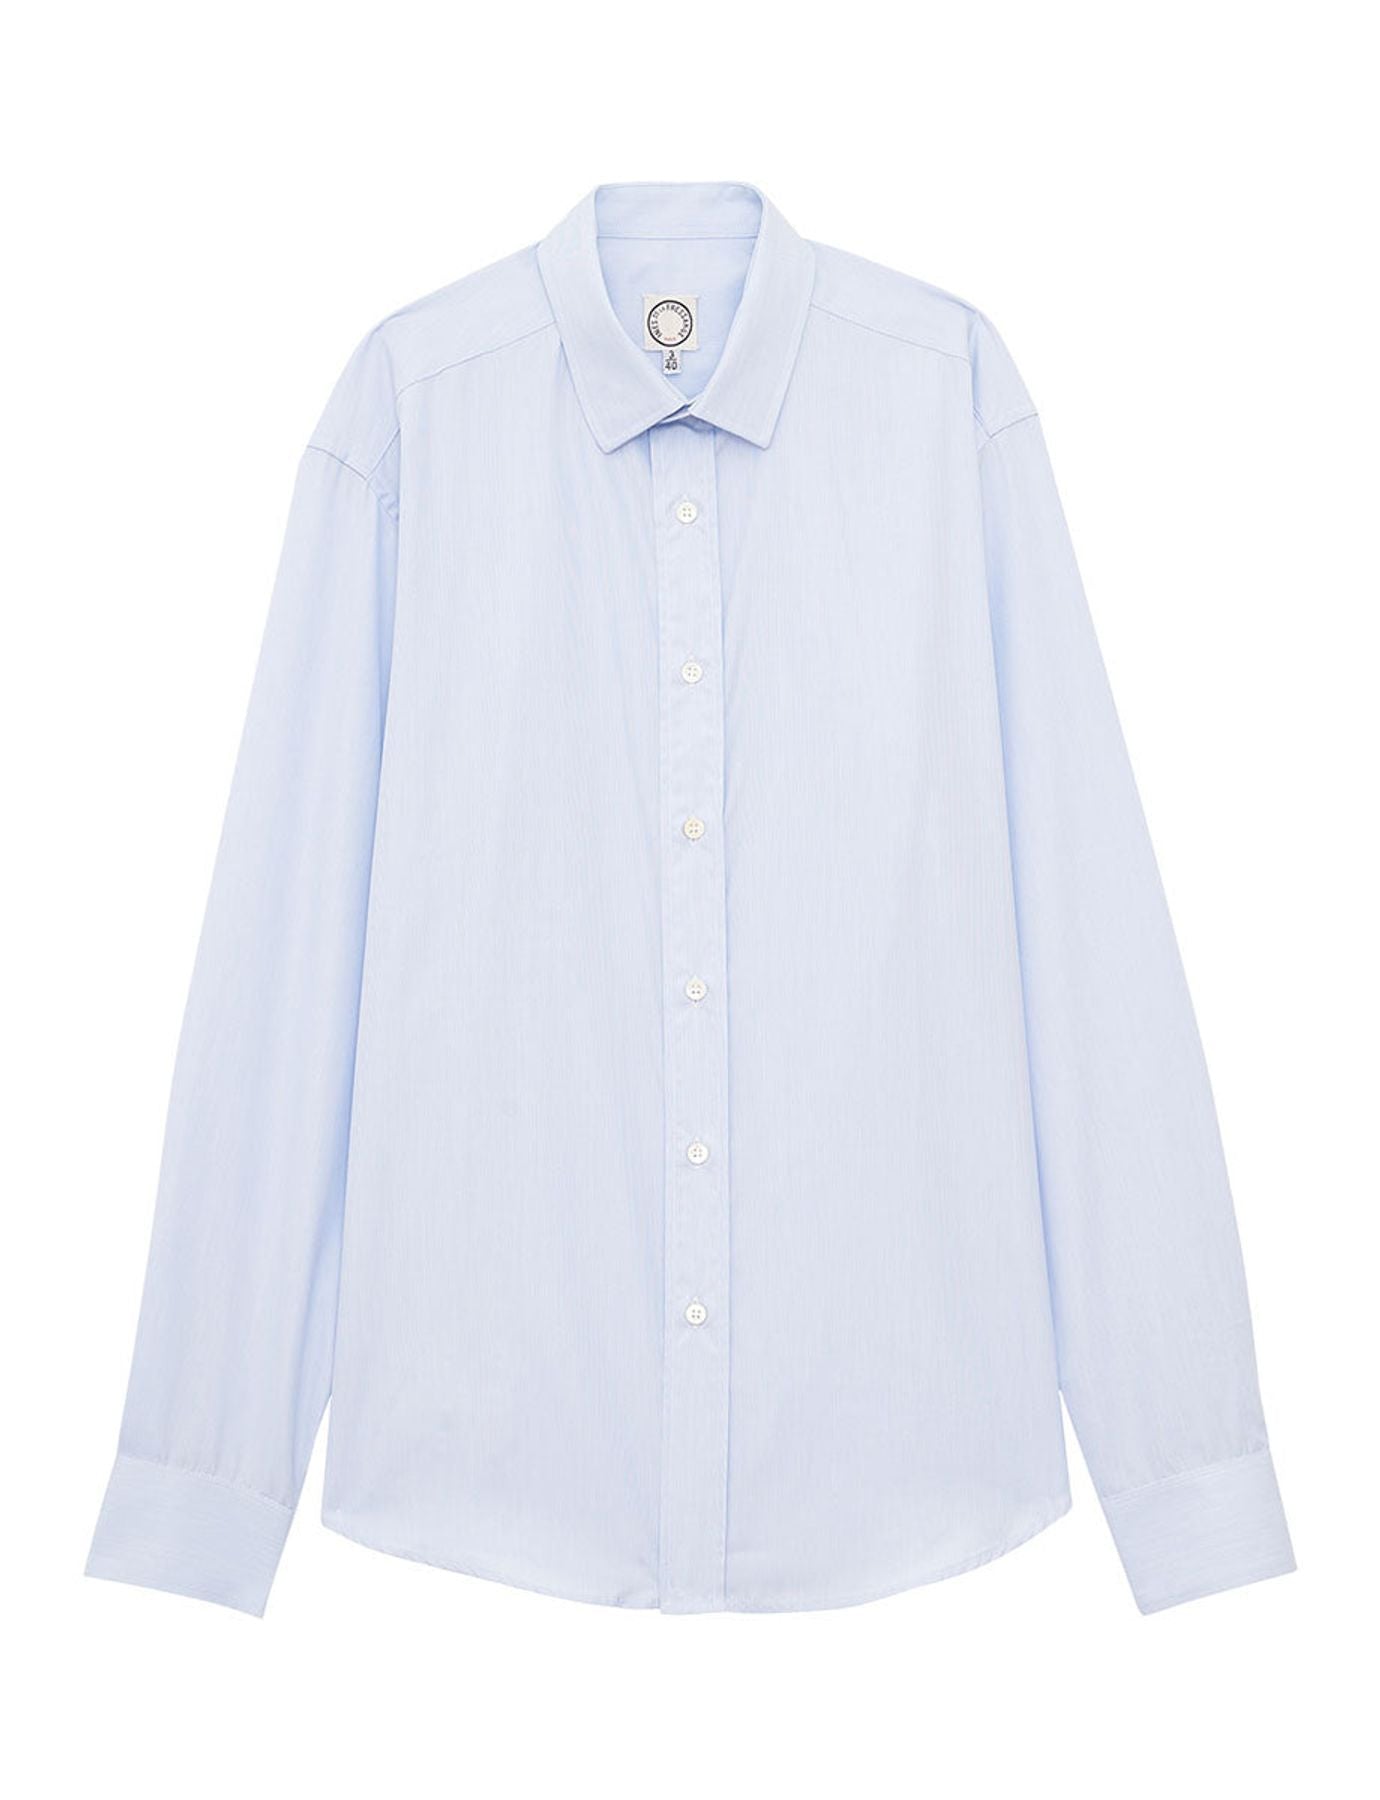 shirt-for-men-olivier-blue-sky